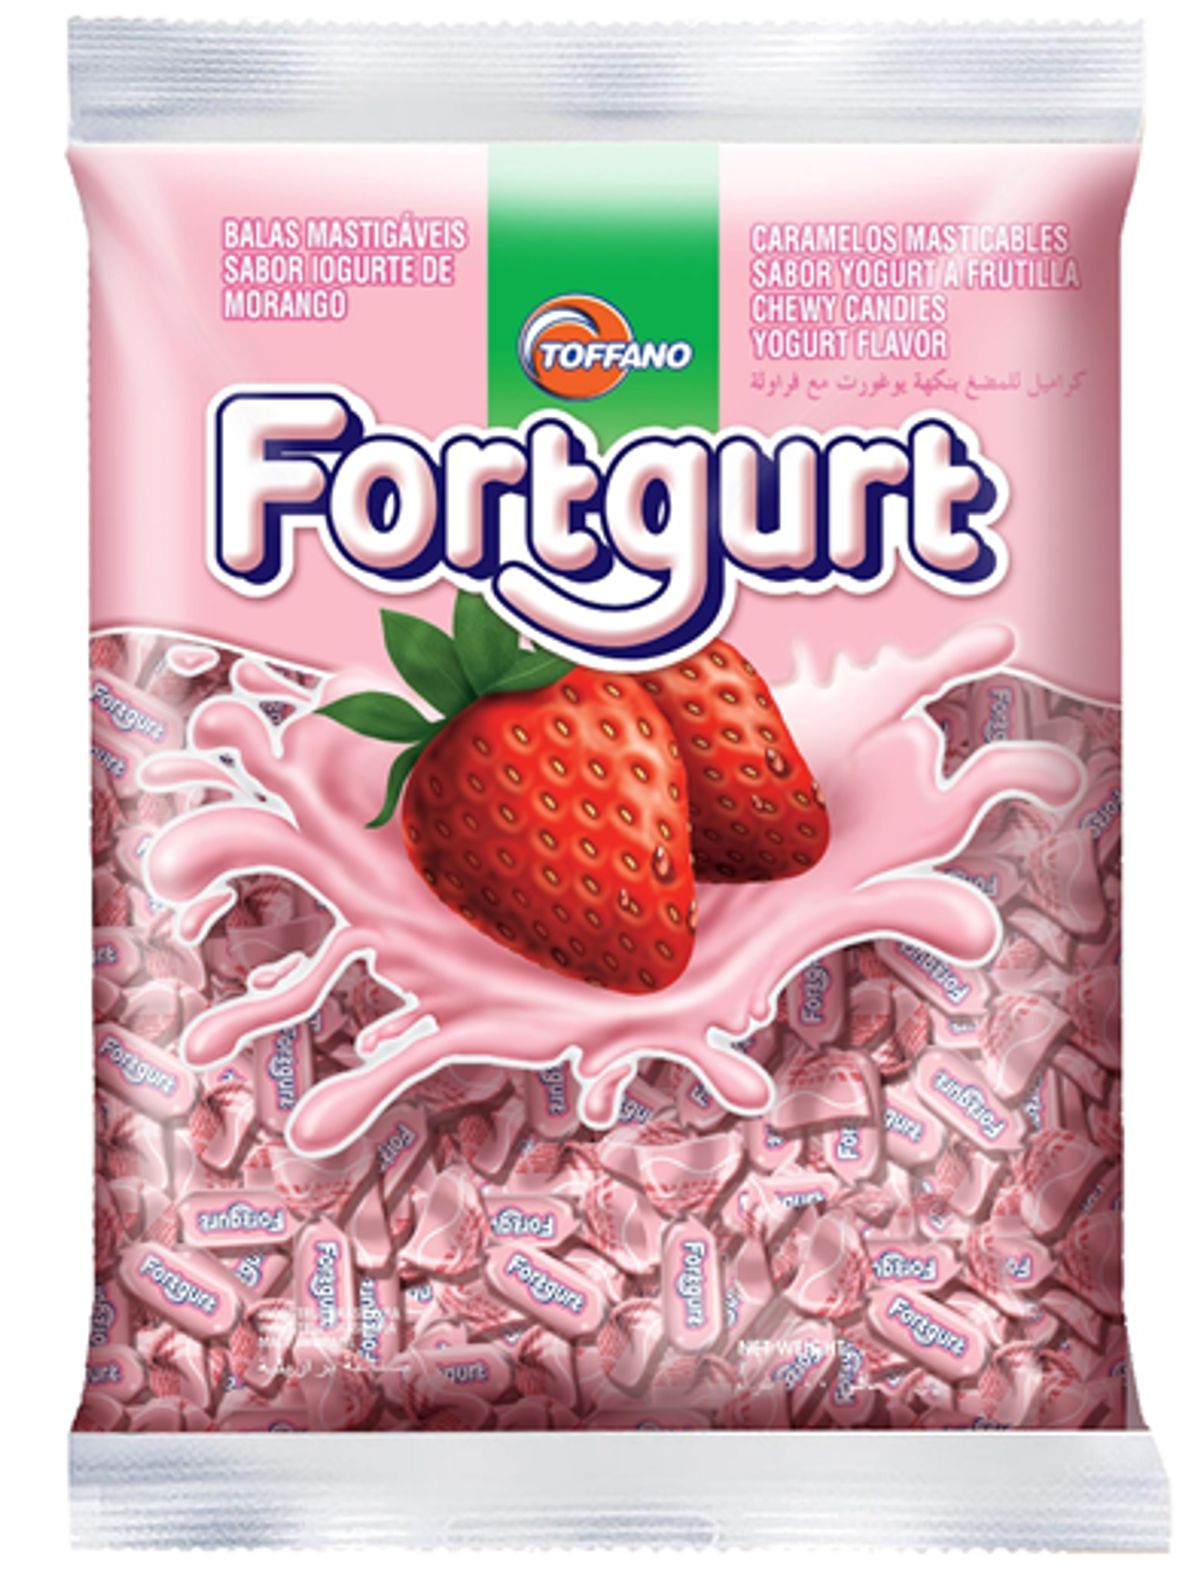 Bala Fortgurt Sabor Iogurte de Morango Pacote 50g